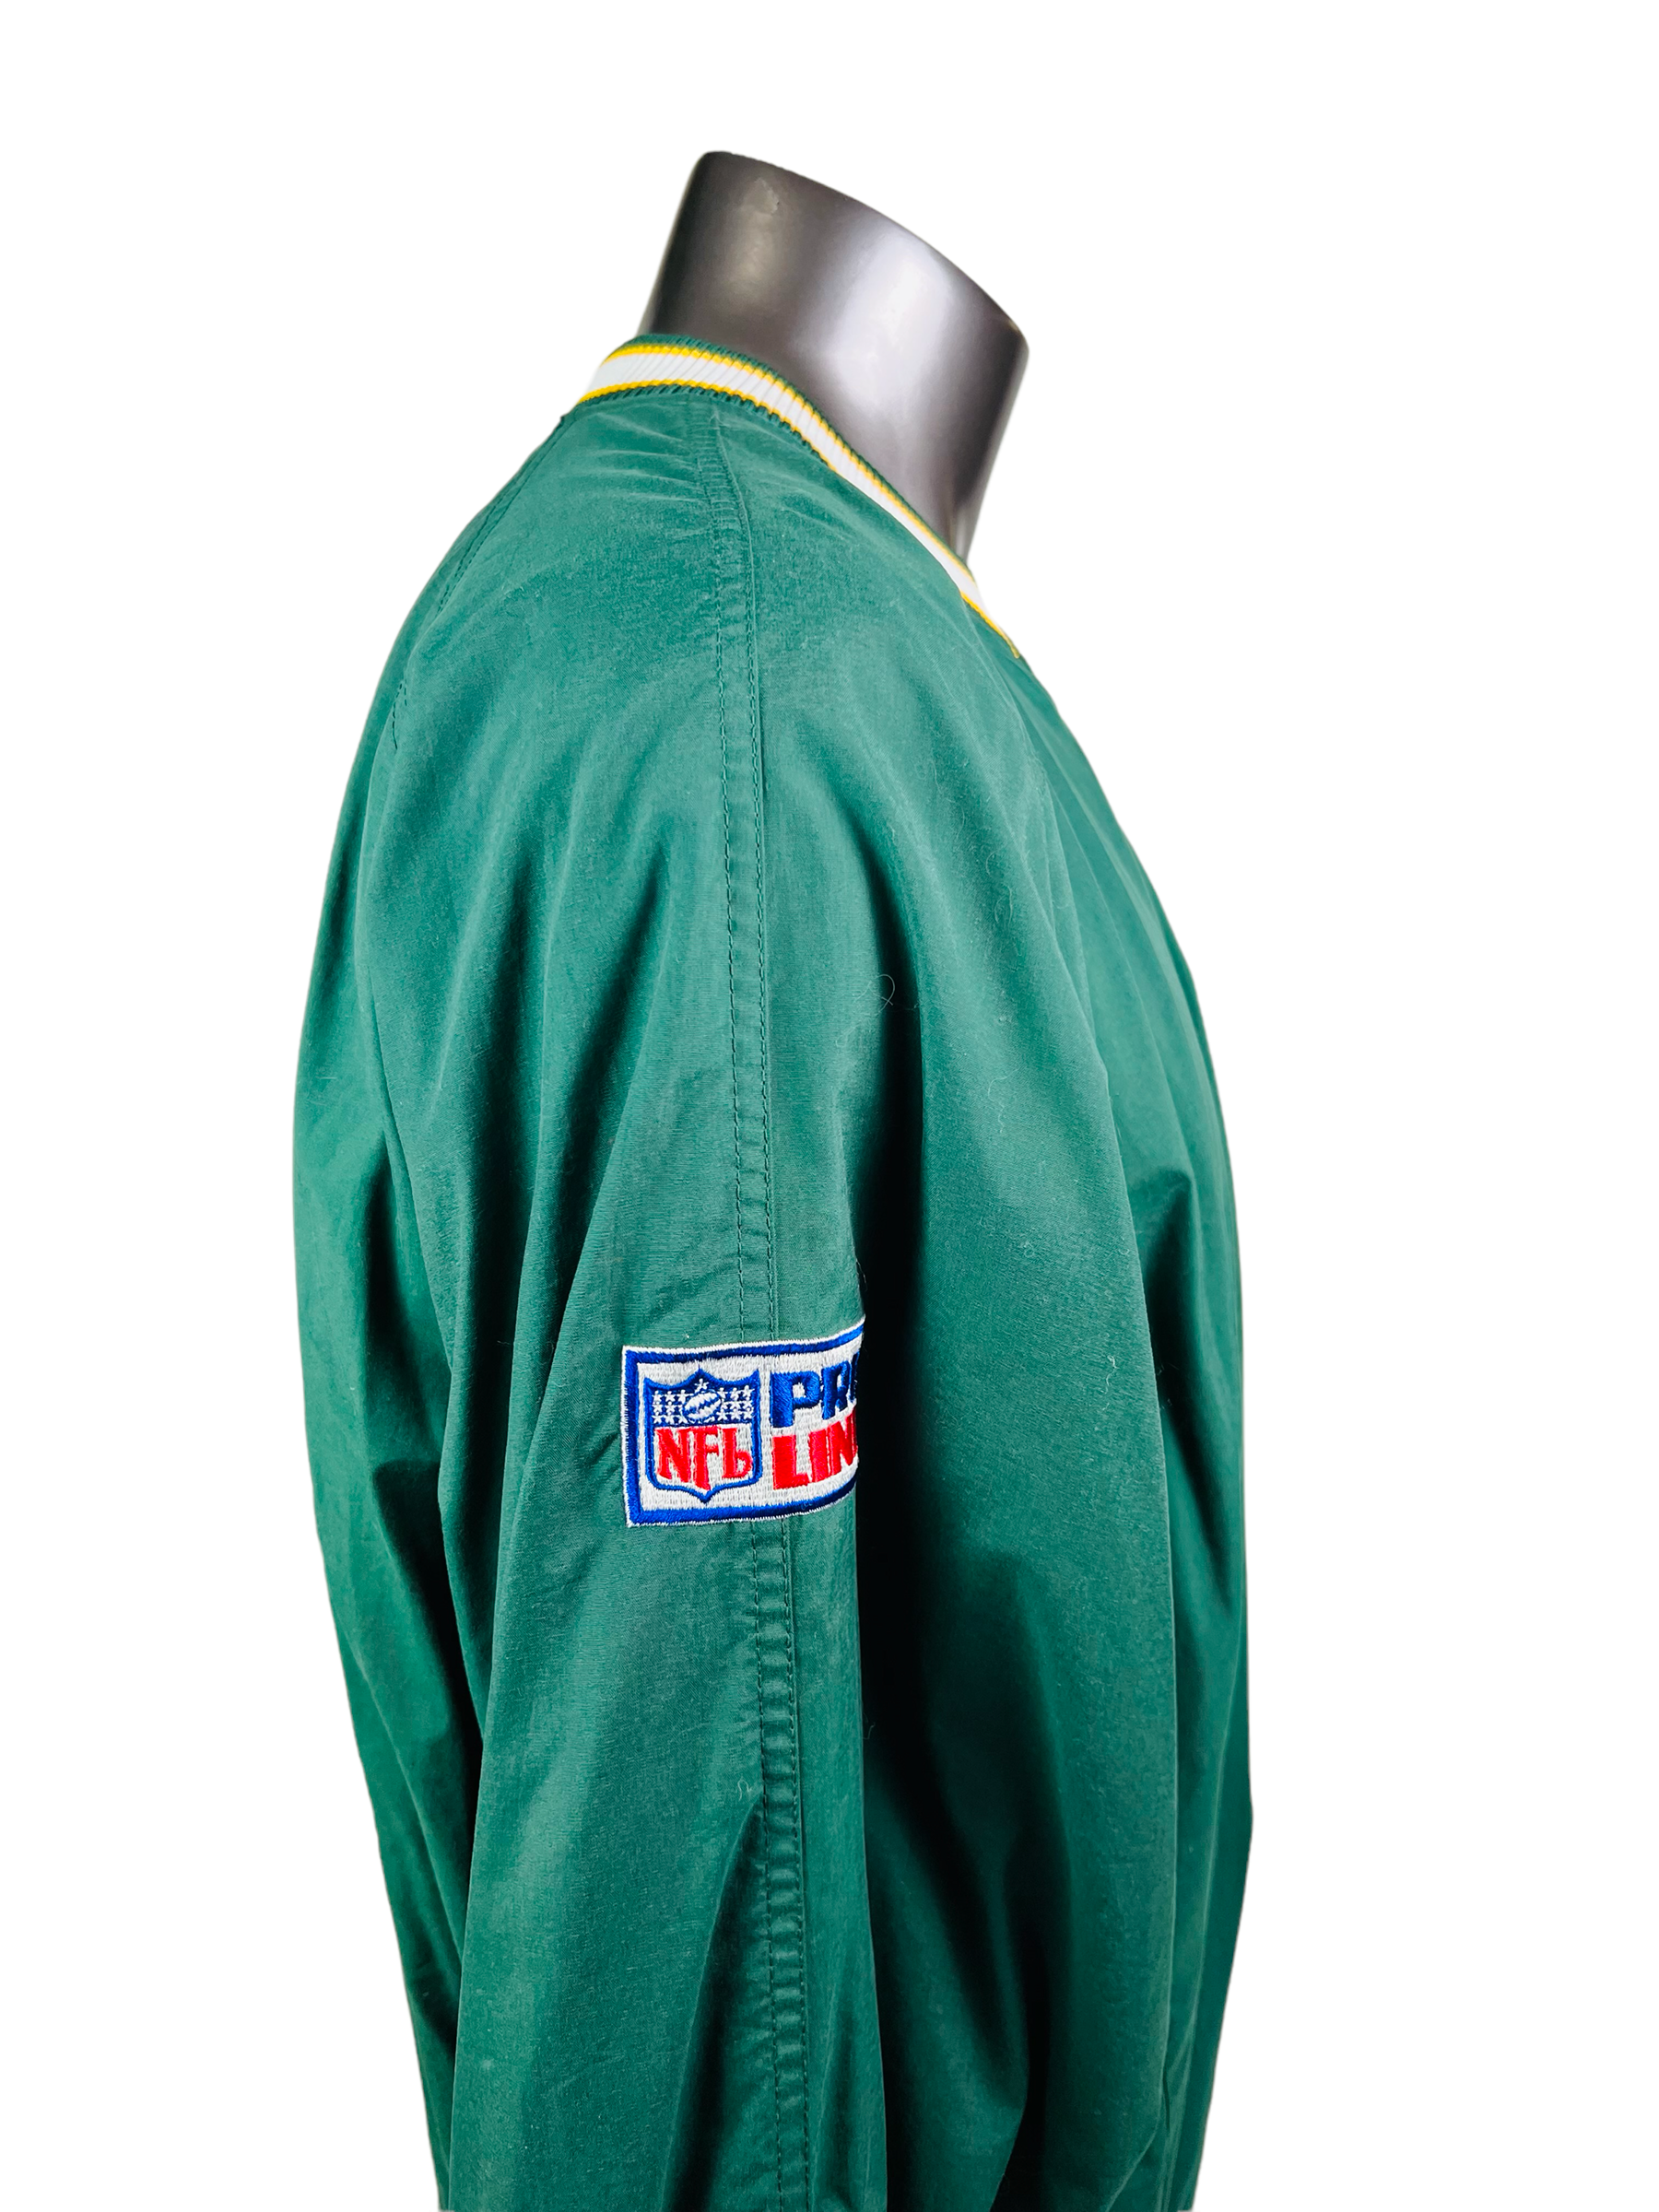 Philadelphia Eagles Vintage Starter Jacket L 